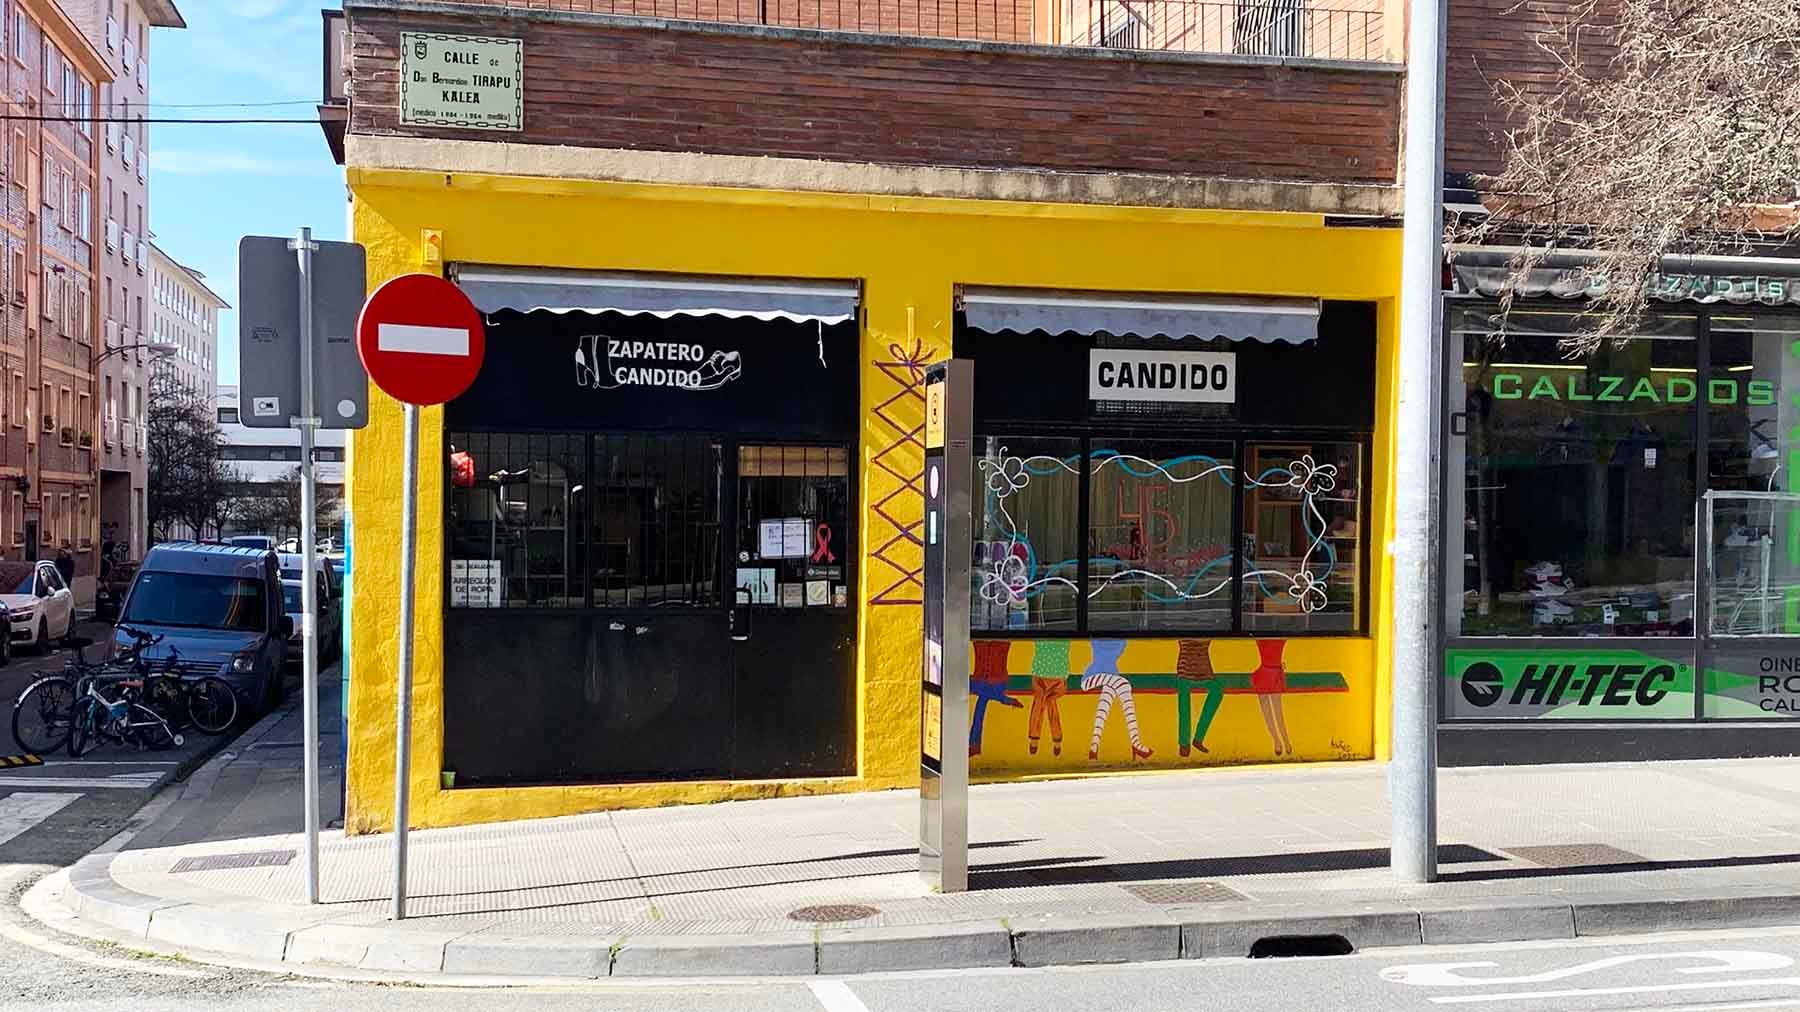 La zapatería Cándido en la calle Bernardino Tirapu 55 de la Rochapea en Pamplona. Navarra.com